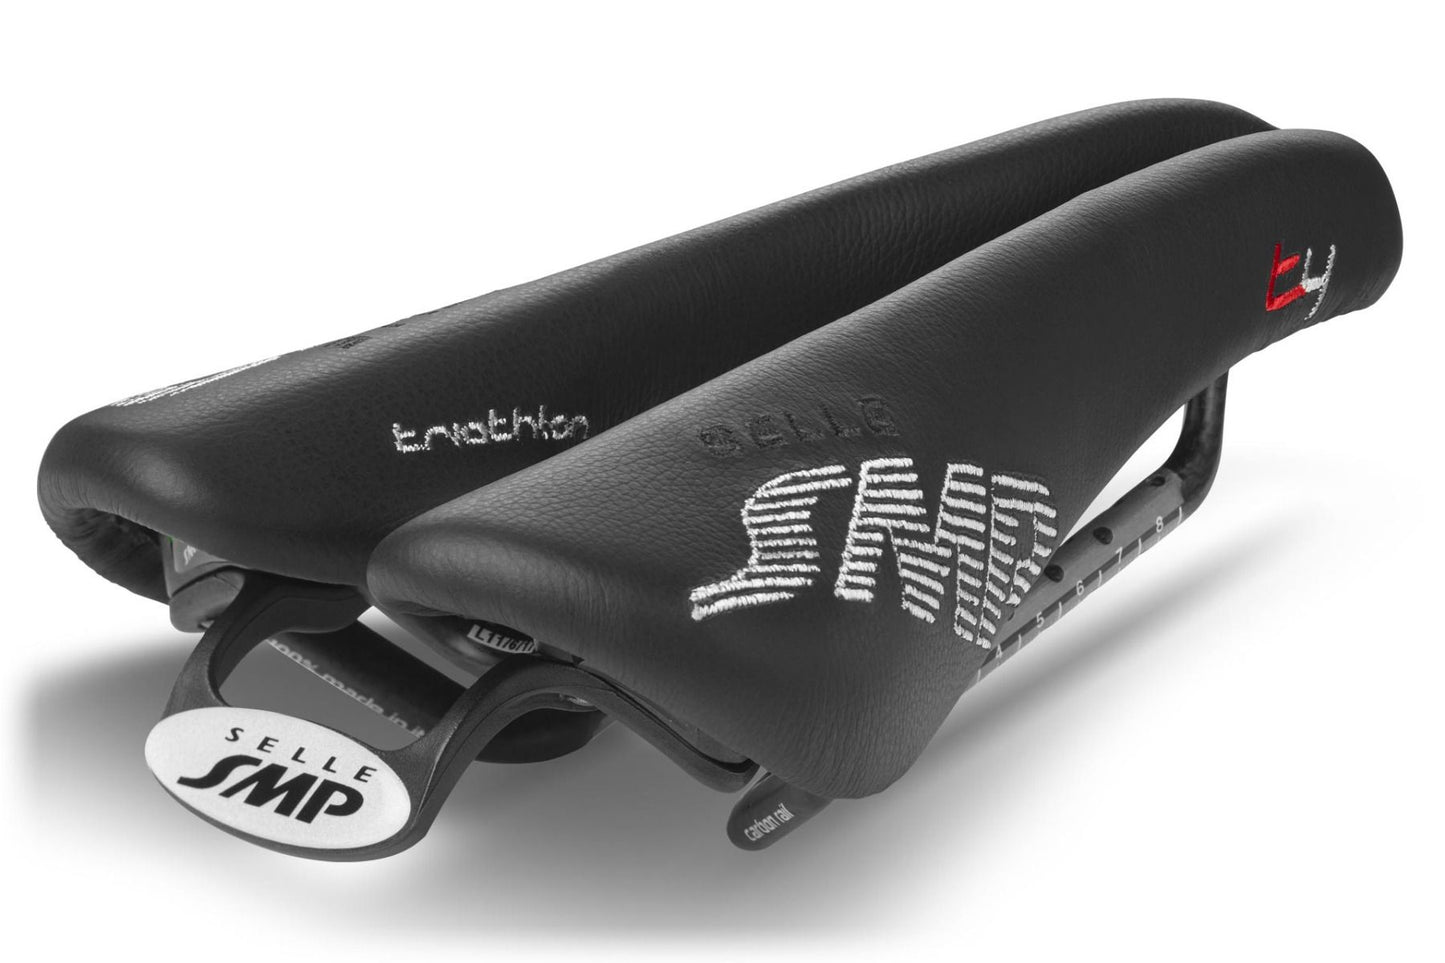 Selle SMP T4 Triathlon Saddle with Carbon Rails (Black)